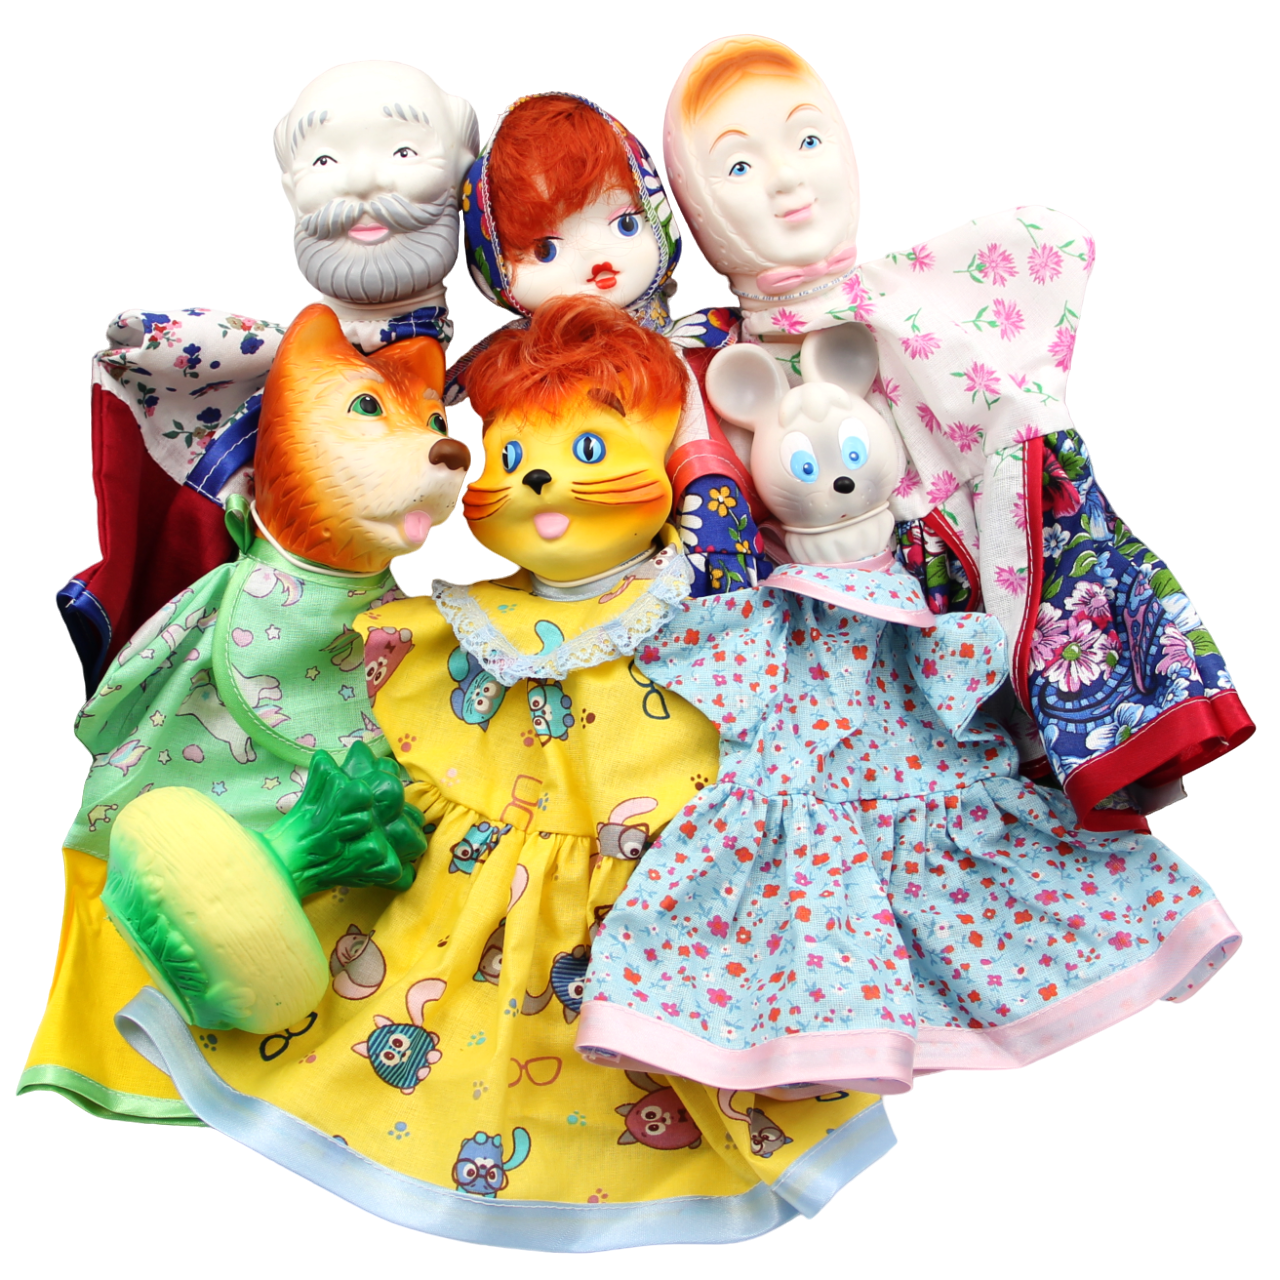 Кукла-перчатка Кудесники Домашний кукольный театр для детей Репка СИ-698-01 домашний кукольный театр кукла перчатка доктор